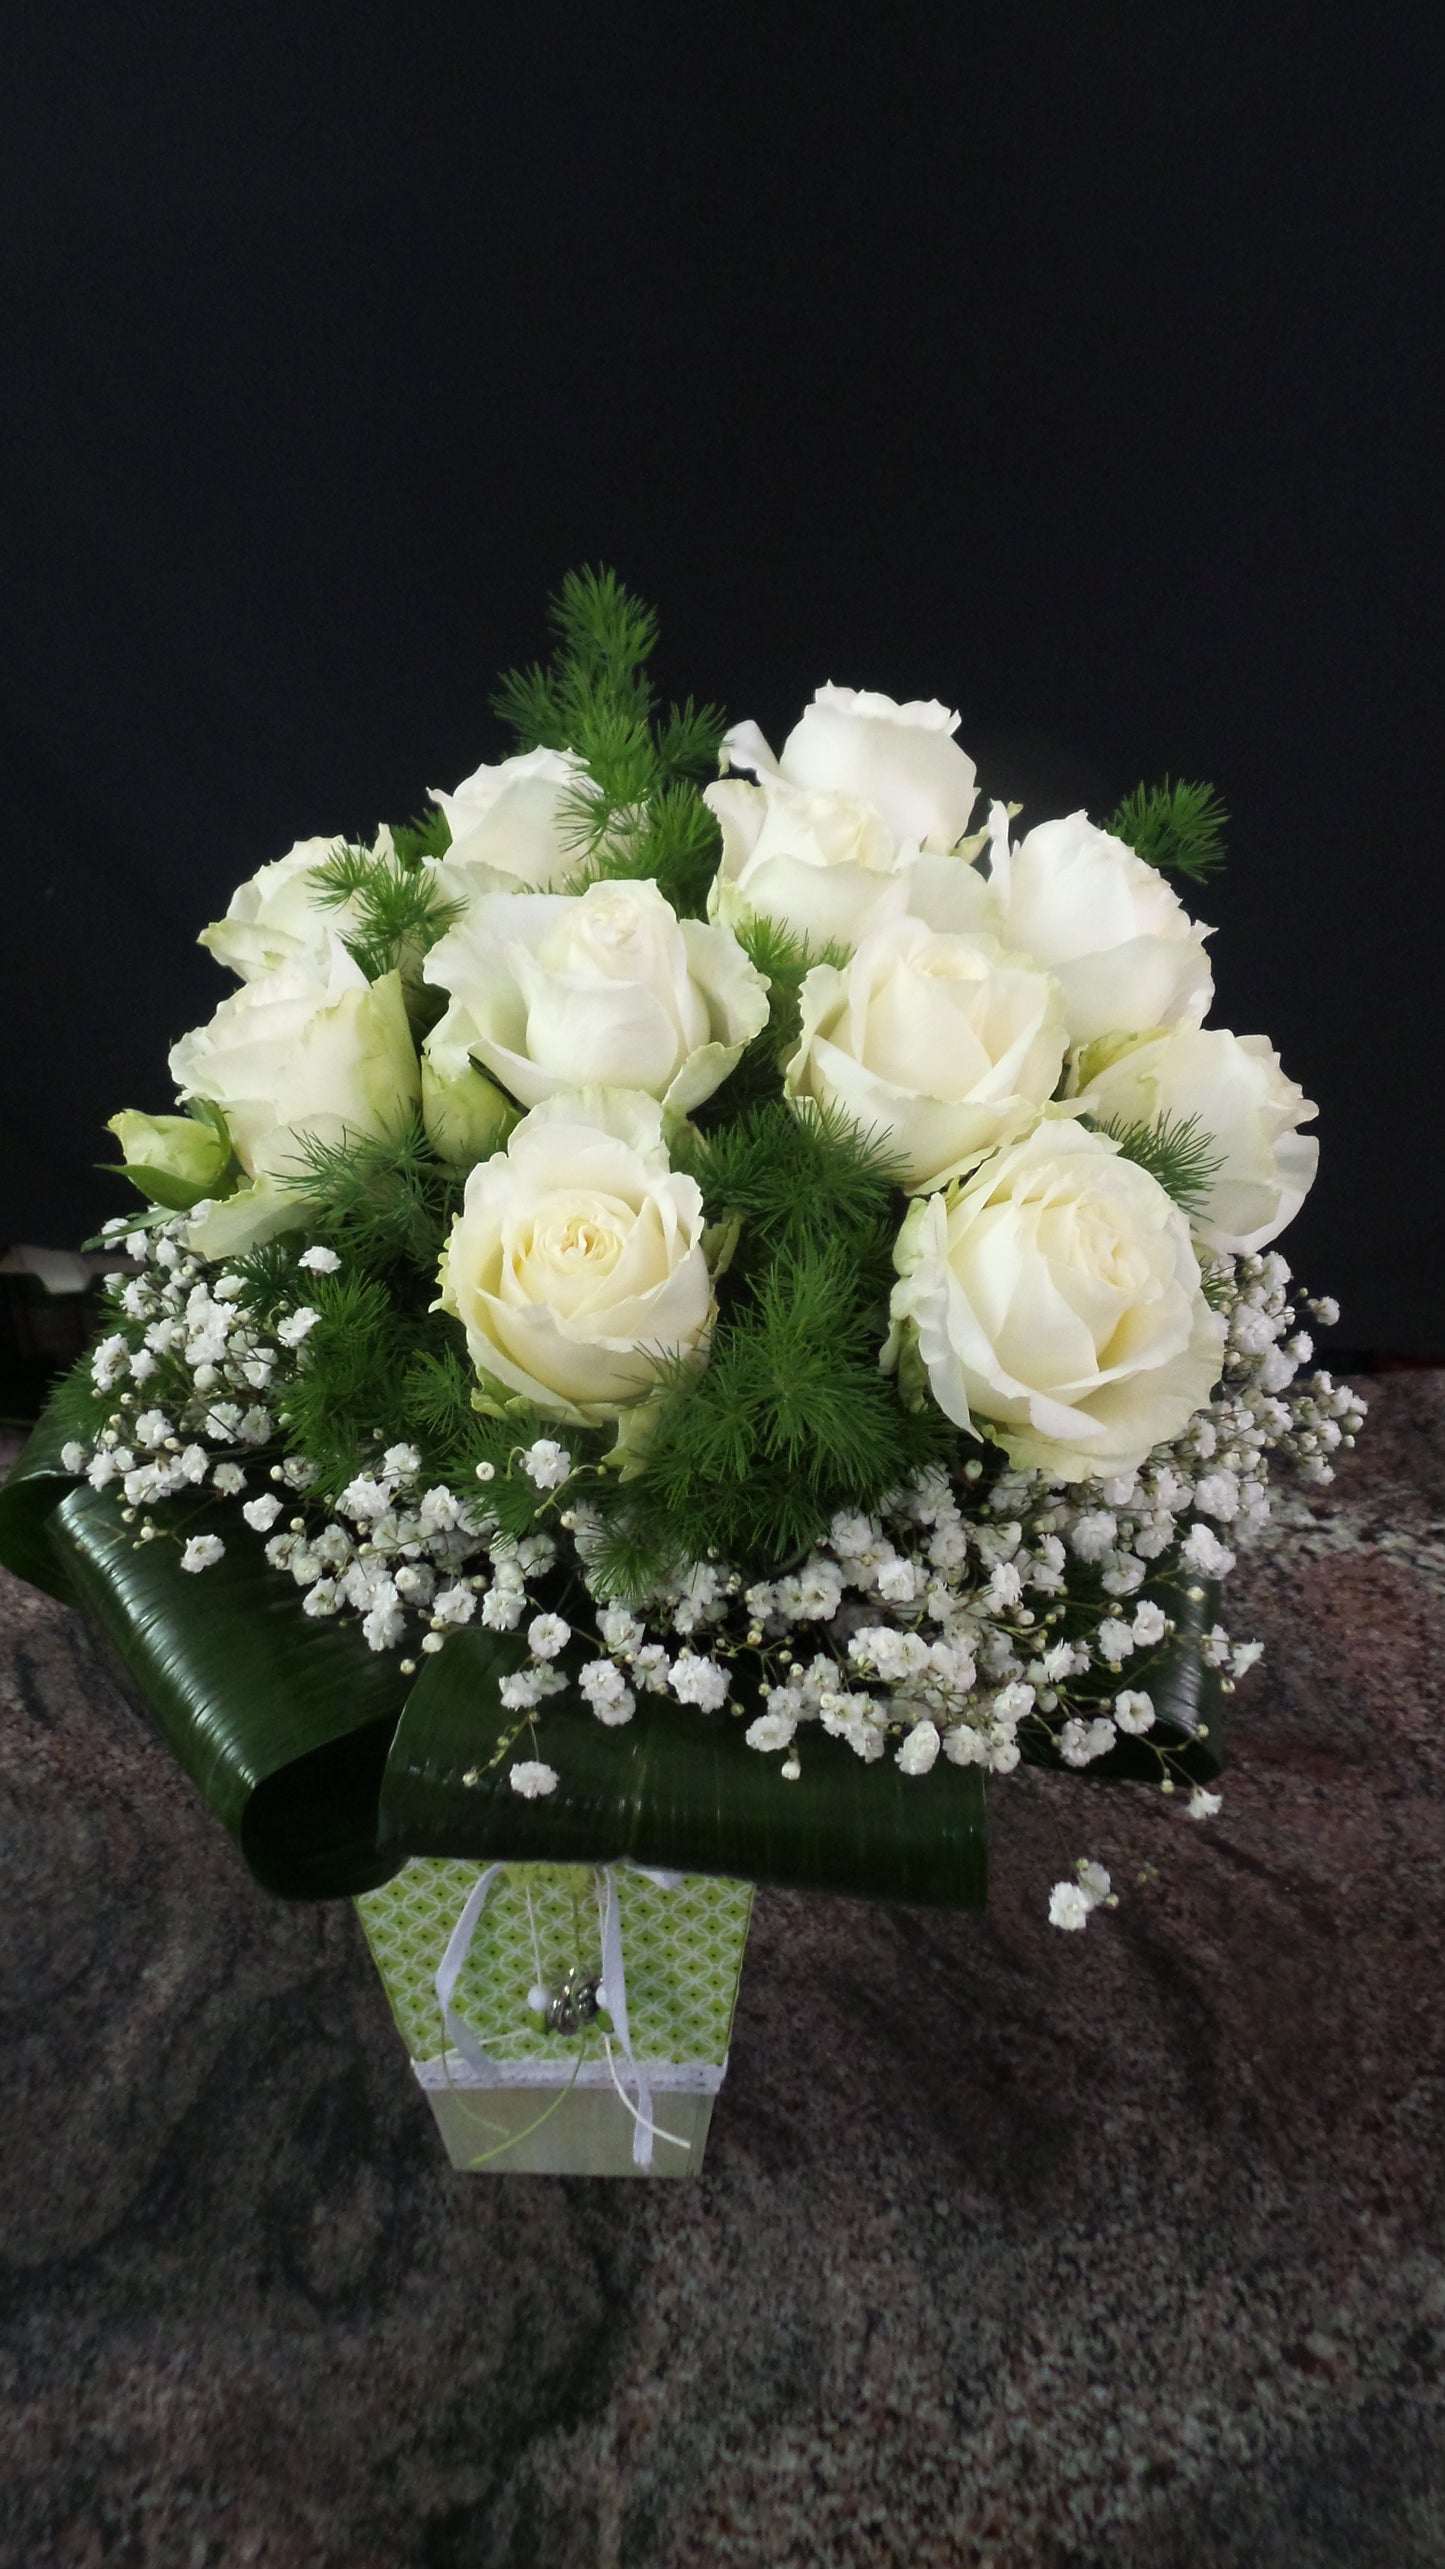 Bouquet compatto di rose bianche